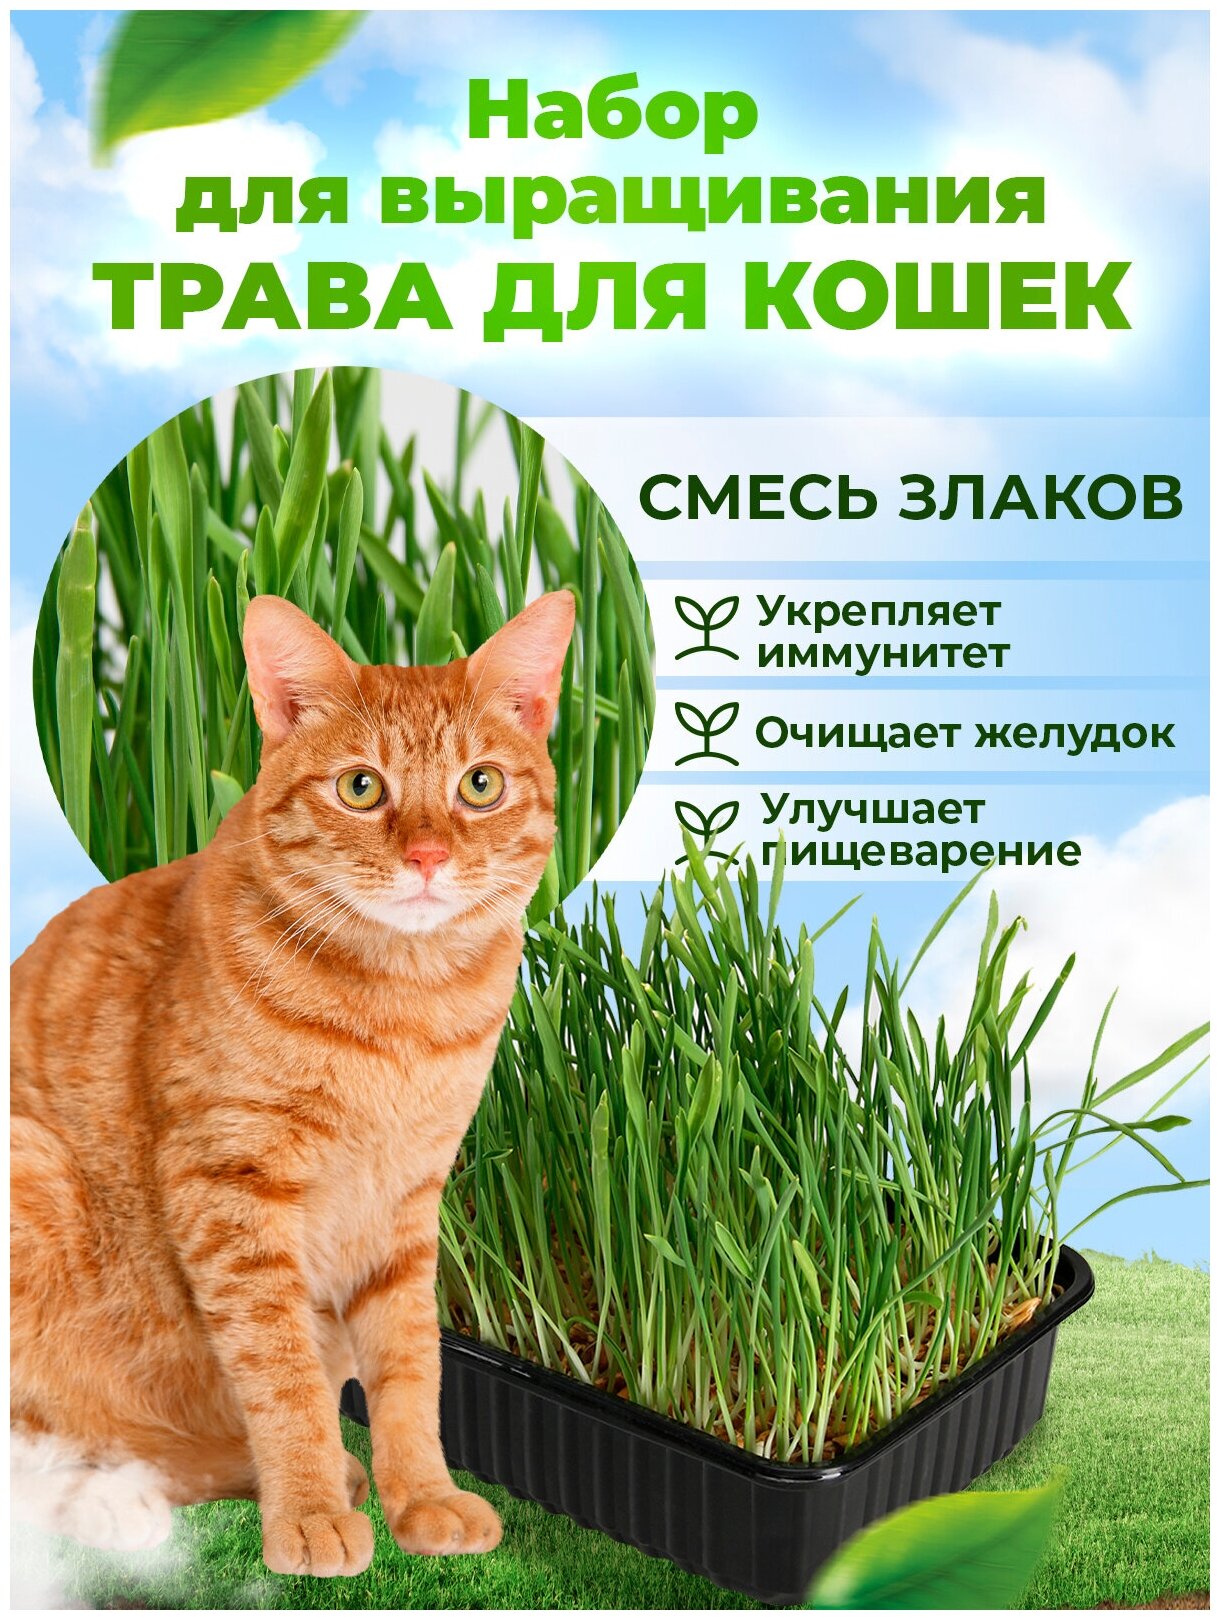 Набор для проращивания Трава для кошек Смесь МММ 30 г / в лотке для животных / микрозелень для котов / семена наборы + лотки